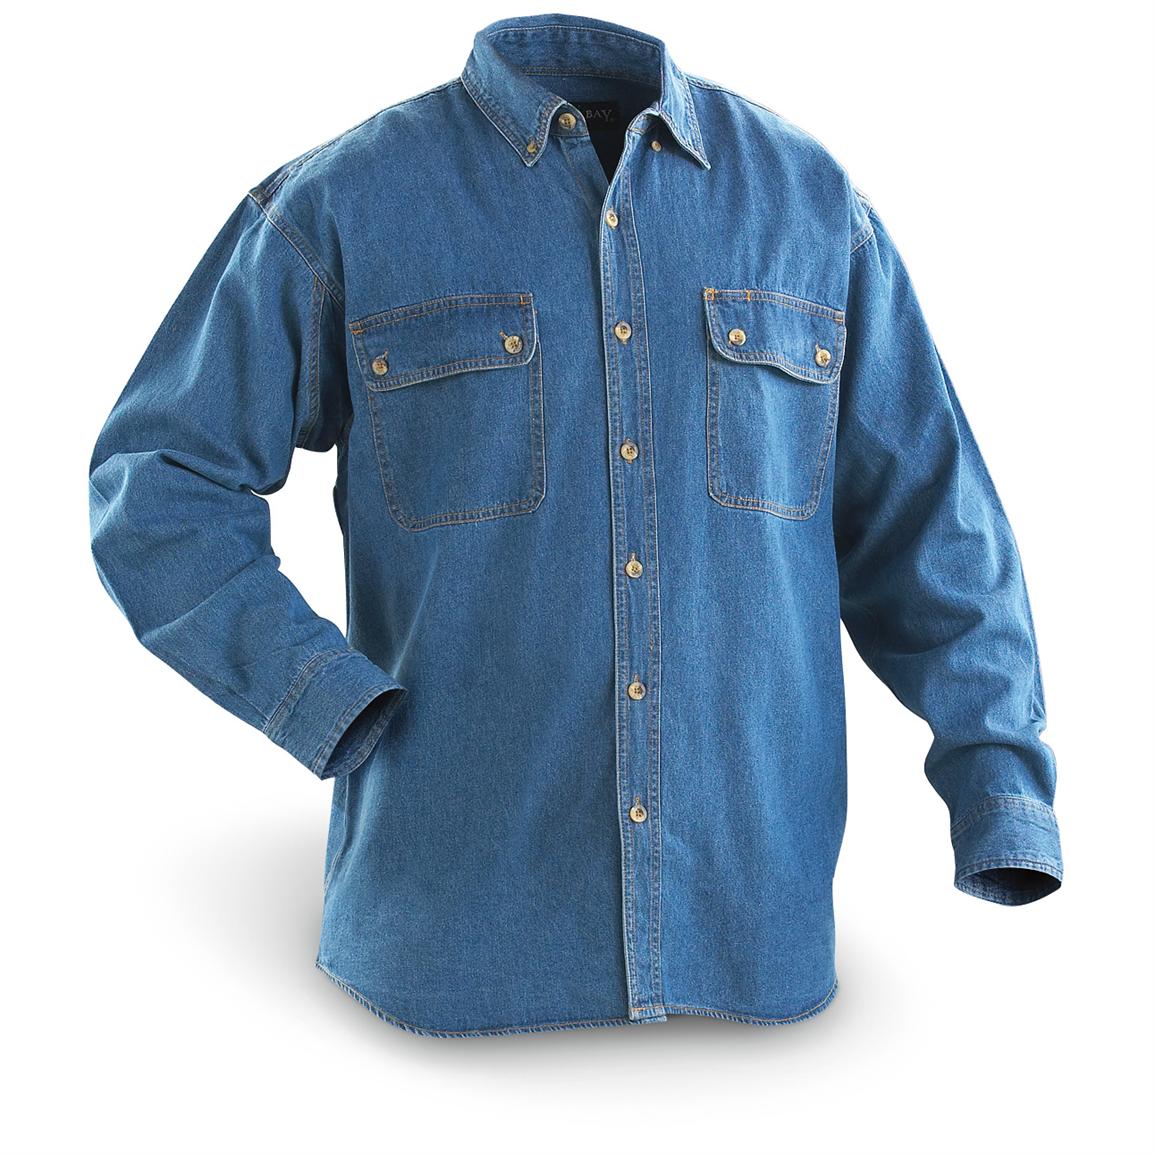 Marino Bay® Long - sleeved Denim Shirt - 141451, Shirts at Sportsman's ...